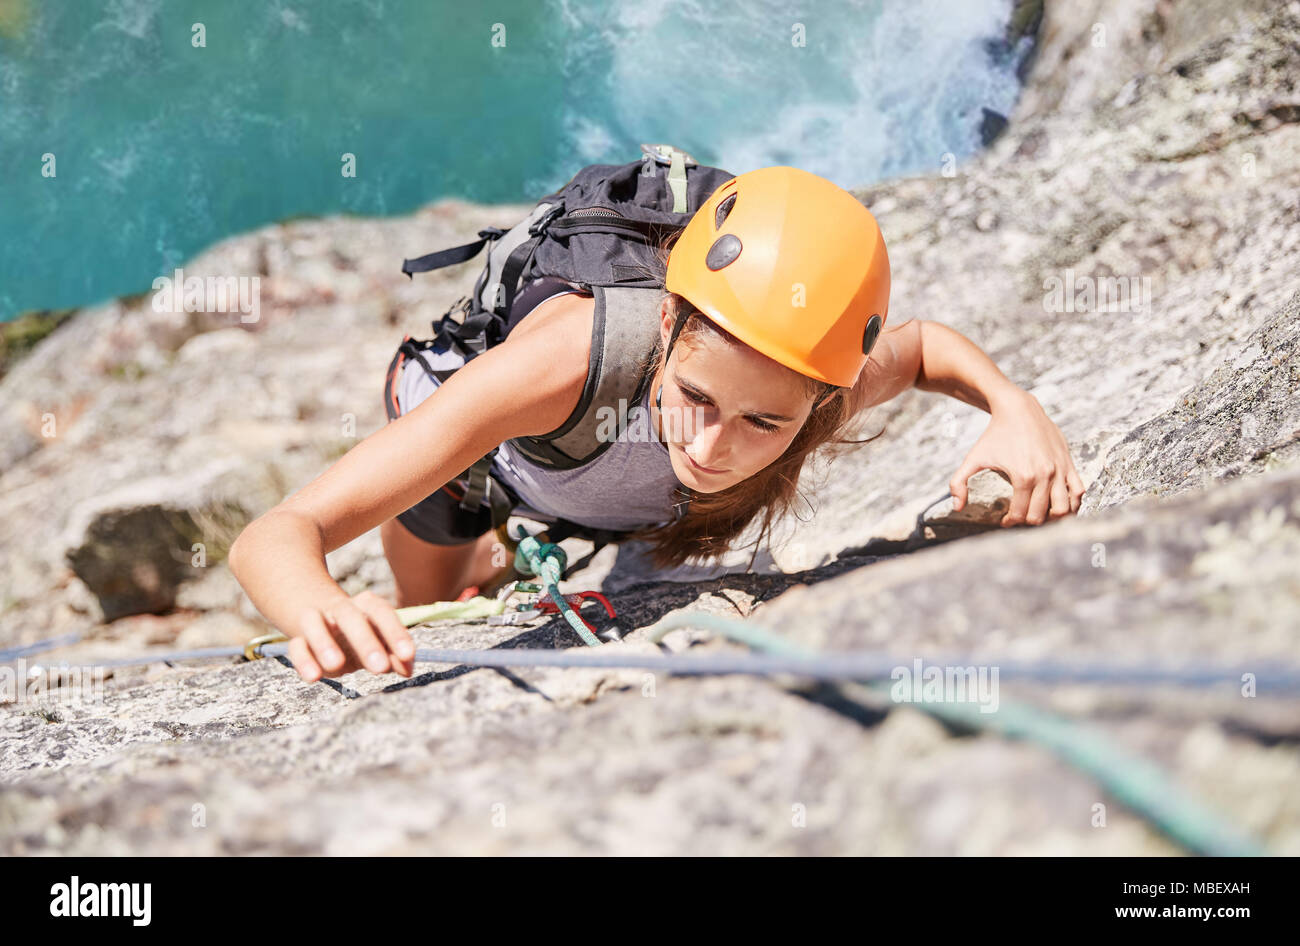 Concentré, déterminé female rock climber scaling rock Banque D'Images